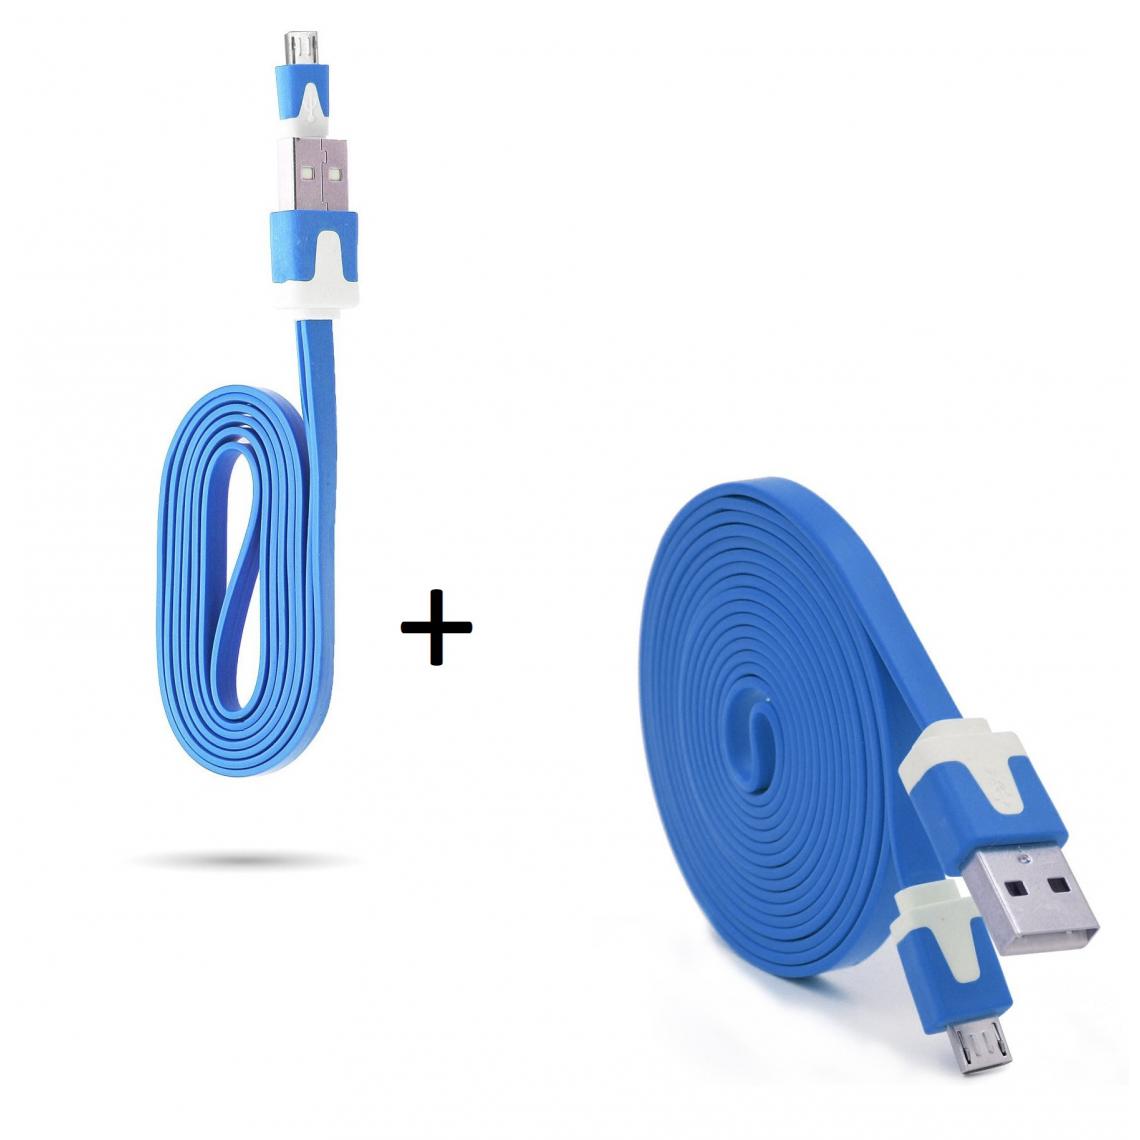 Shot - Pack Chargeur pour JBL Flip 4 Smartphone Micro USB (Cable Noodle 3m + Cable Noodle 1m) Android (BLEU) - Chargeur secteur téléphone